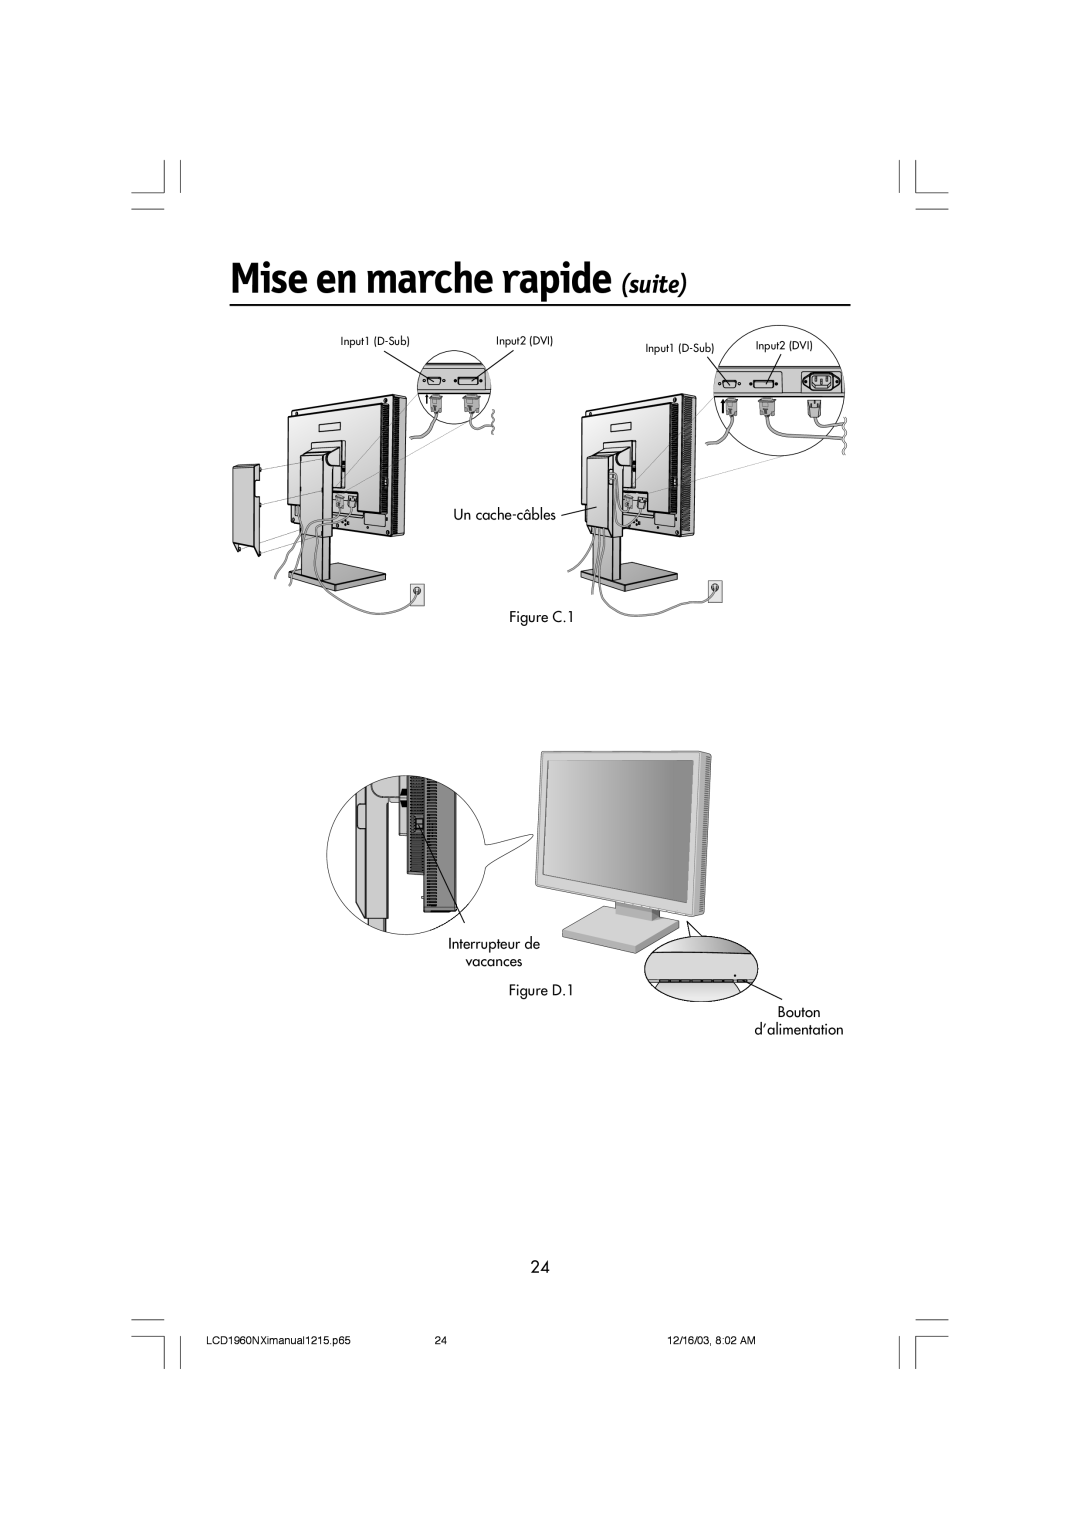 NEC LCD1960NXI manual Mise en marche rapide suite, Un cache-c‰bles Figure C.1 Interrupteur de vacances Figure D.1 Bouton 